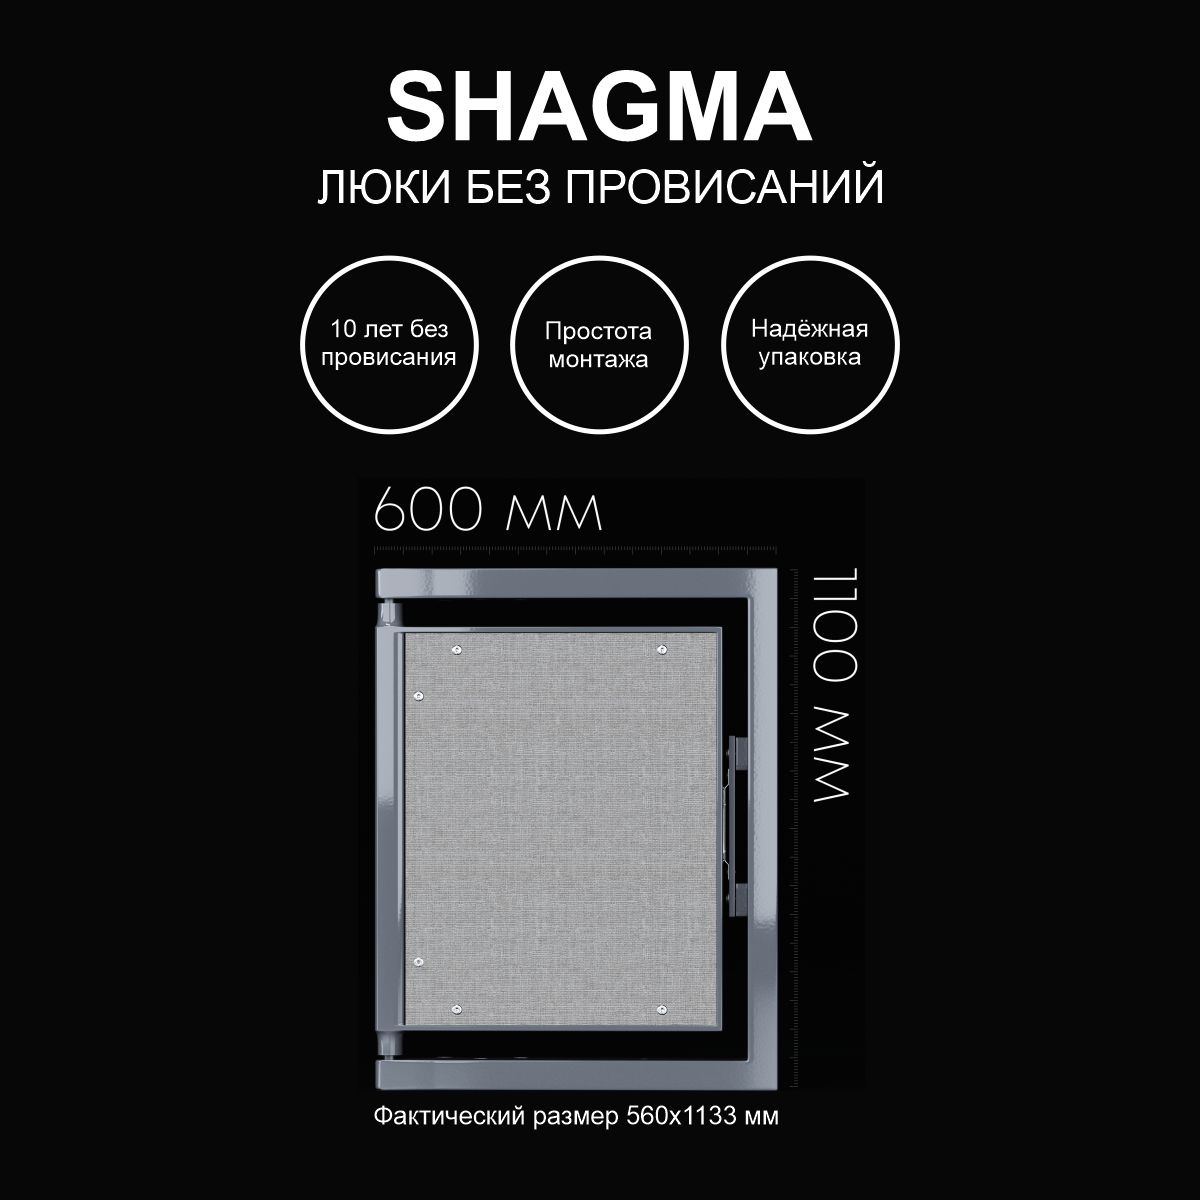 фото Люк shagma ревизионный под плитку сантехнический 600х1100 мм